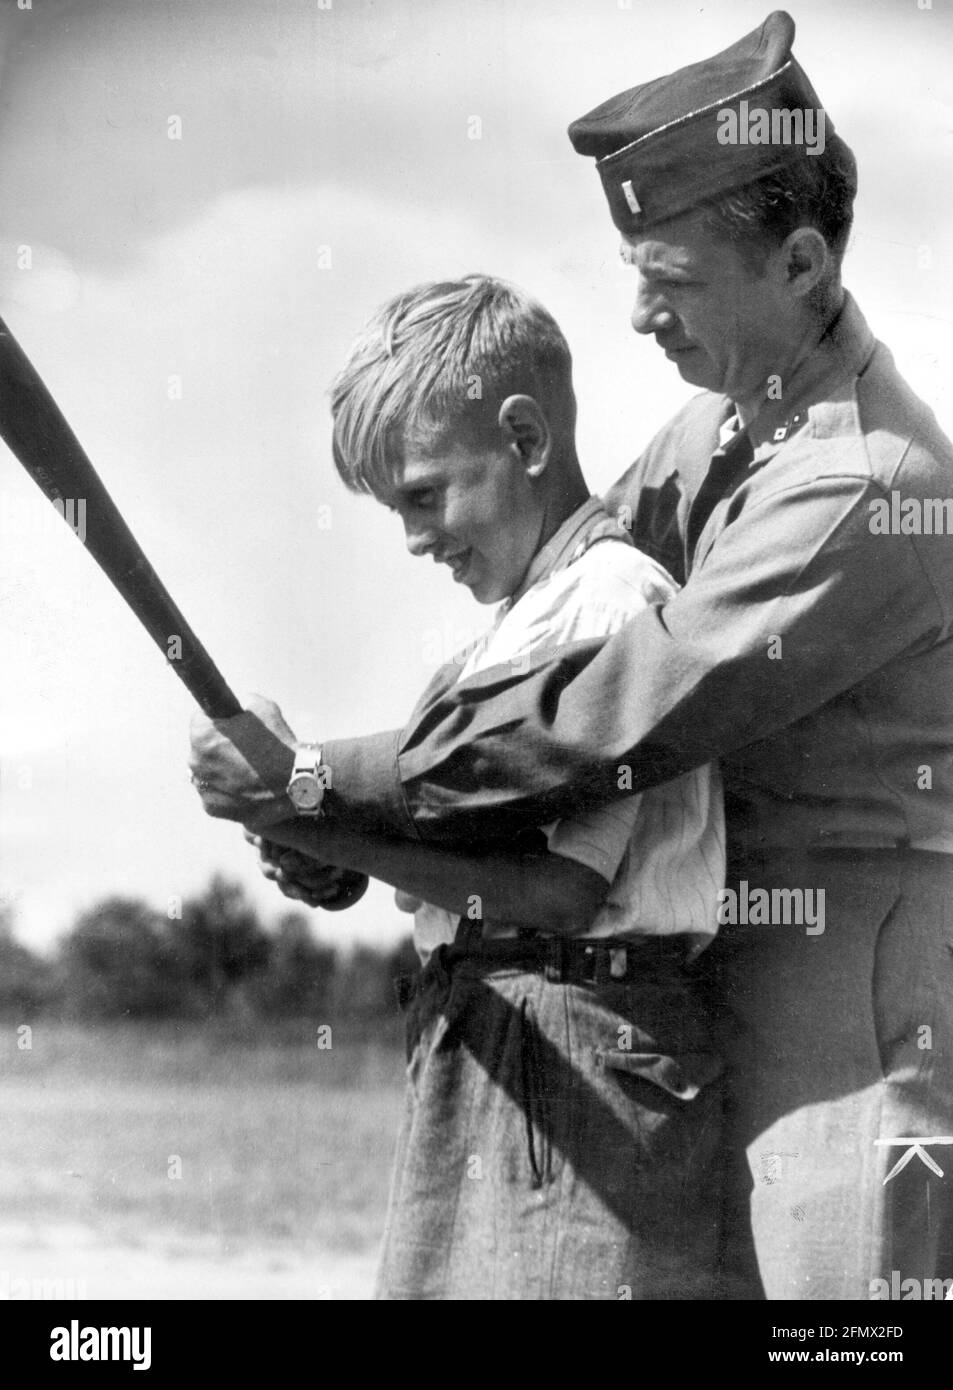 Periodo del dopoguerra, occupazione alleata della Germania, ufficiale degli Stati Uniti che insegna a un ragazzo tedesco come giocare a baseball, INFORMAZIONI-DIRITTI-AGGIUNTIVI-DI-LIQUIDAZIONE-NON-DISPONIBILI Foto Stock